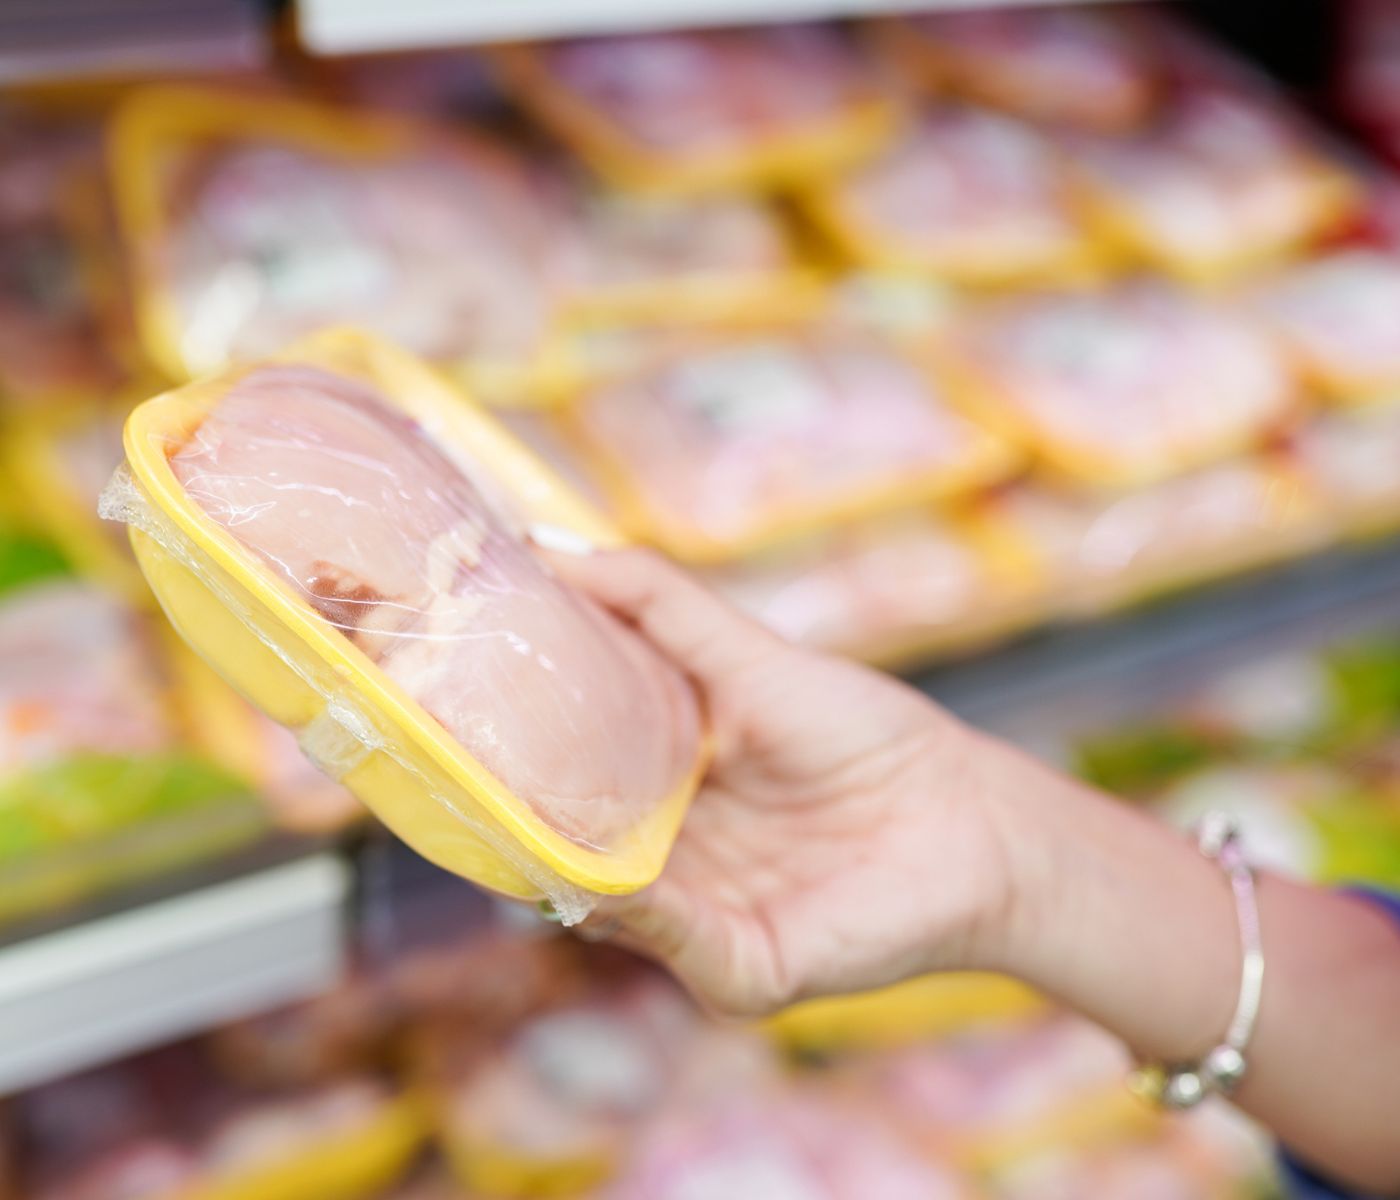 México reacciona ante medida de EE.UU. al etiquetado de productos cárnicos, avícolas y huevo